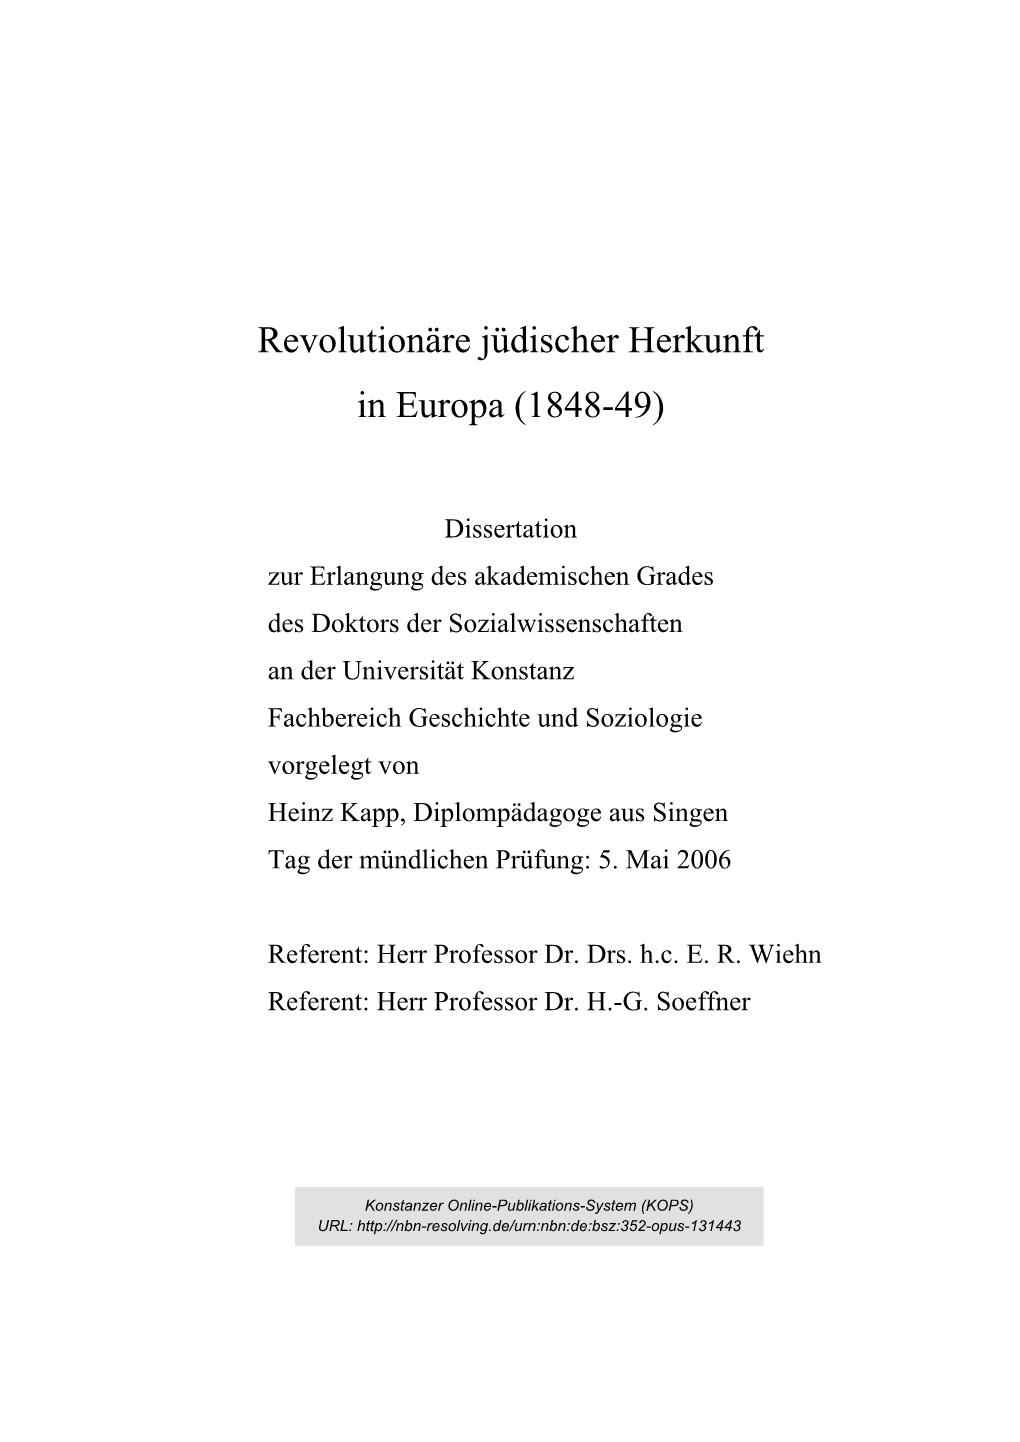 Revolutionäre Jüdischer Herkunft in Europa (1848-49)